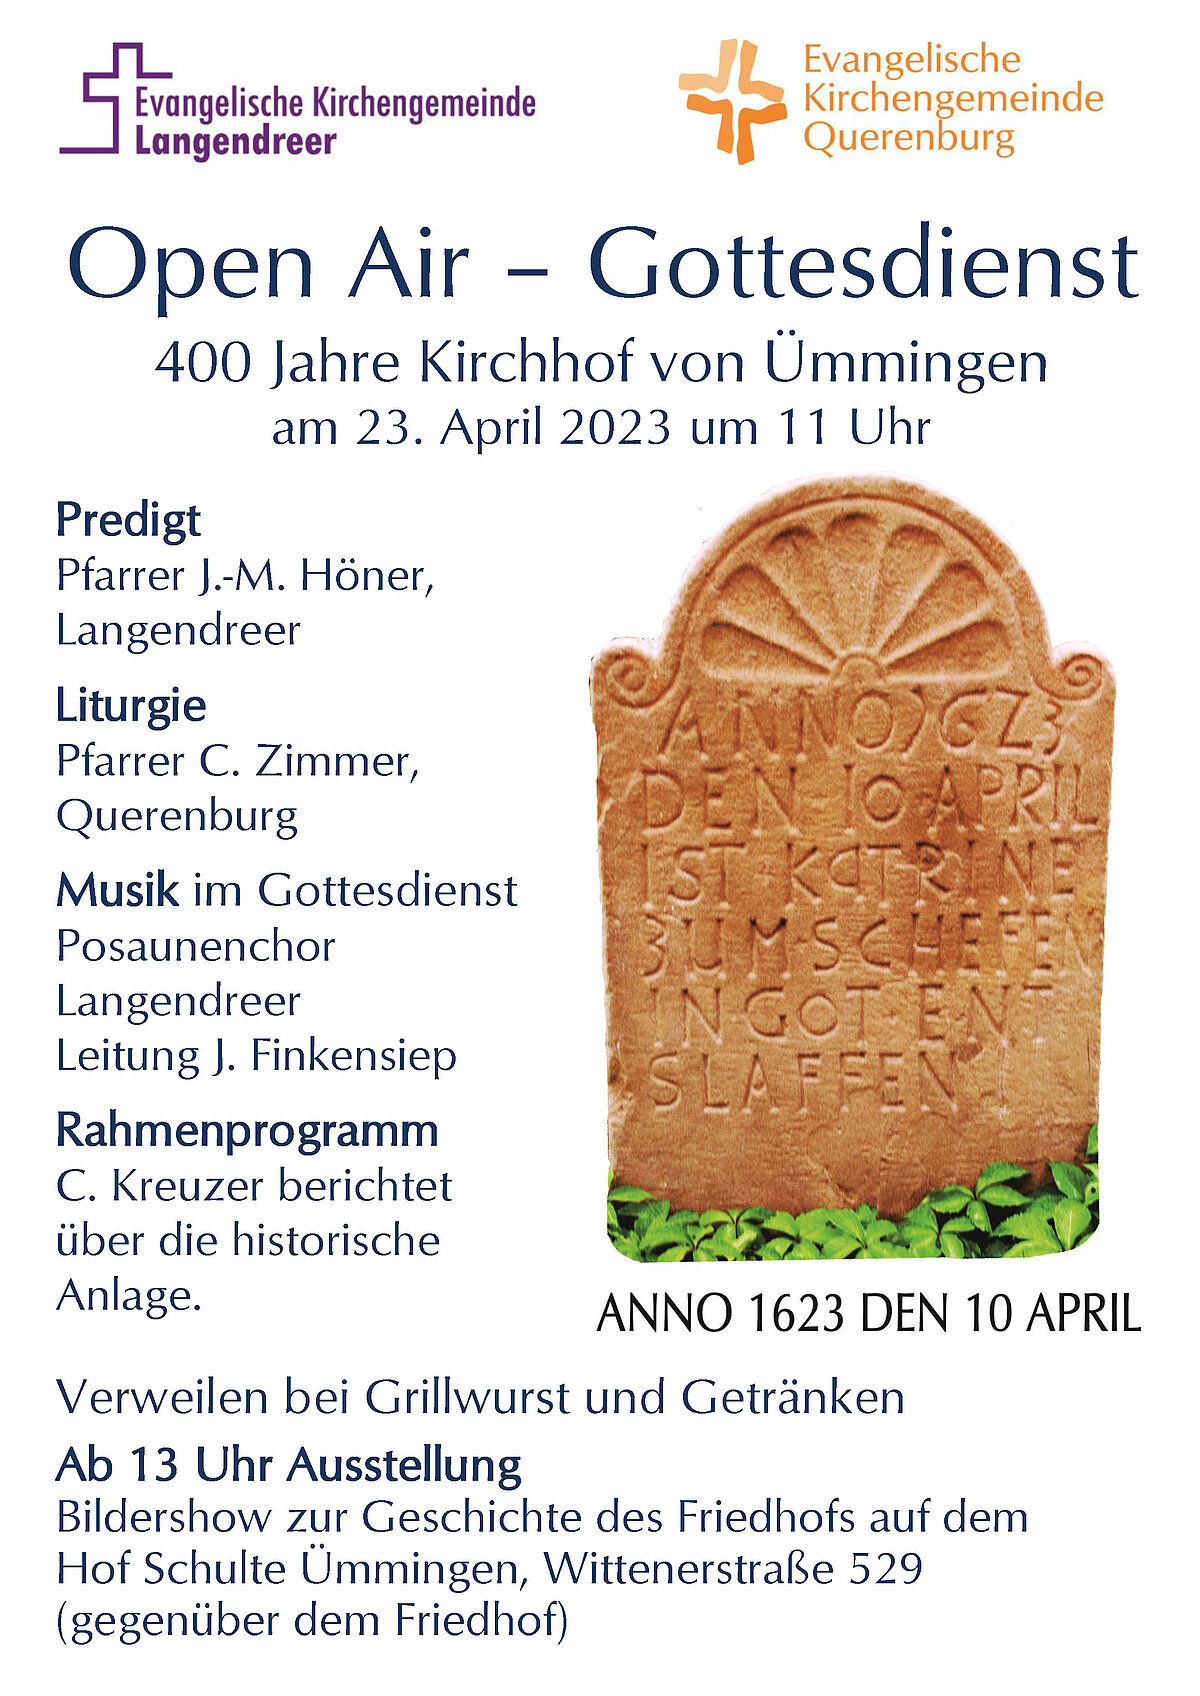 Herzliche Einladung zum Open-Air-Gottesdienst   »400 Jahre Kirchhof von Ümmingen«